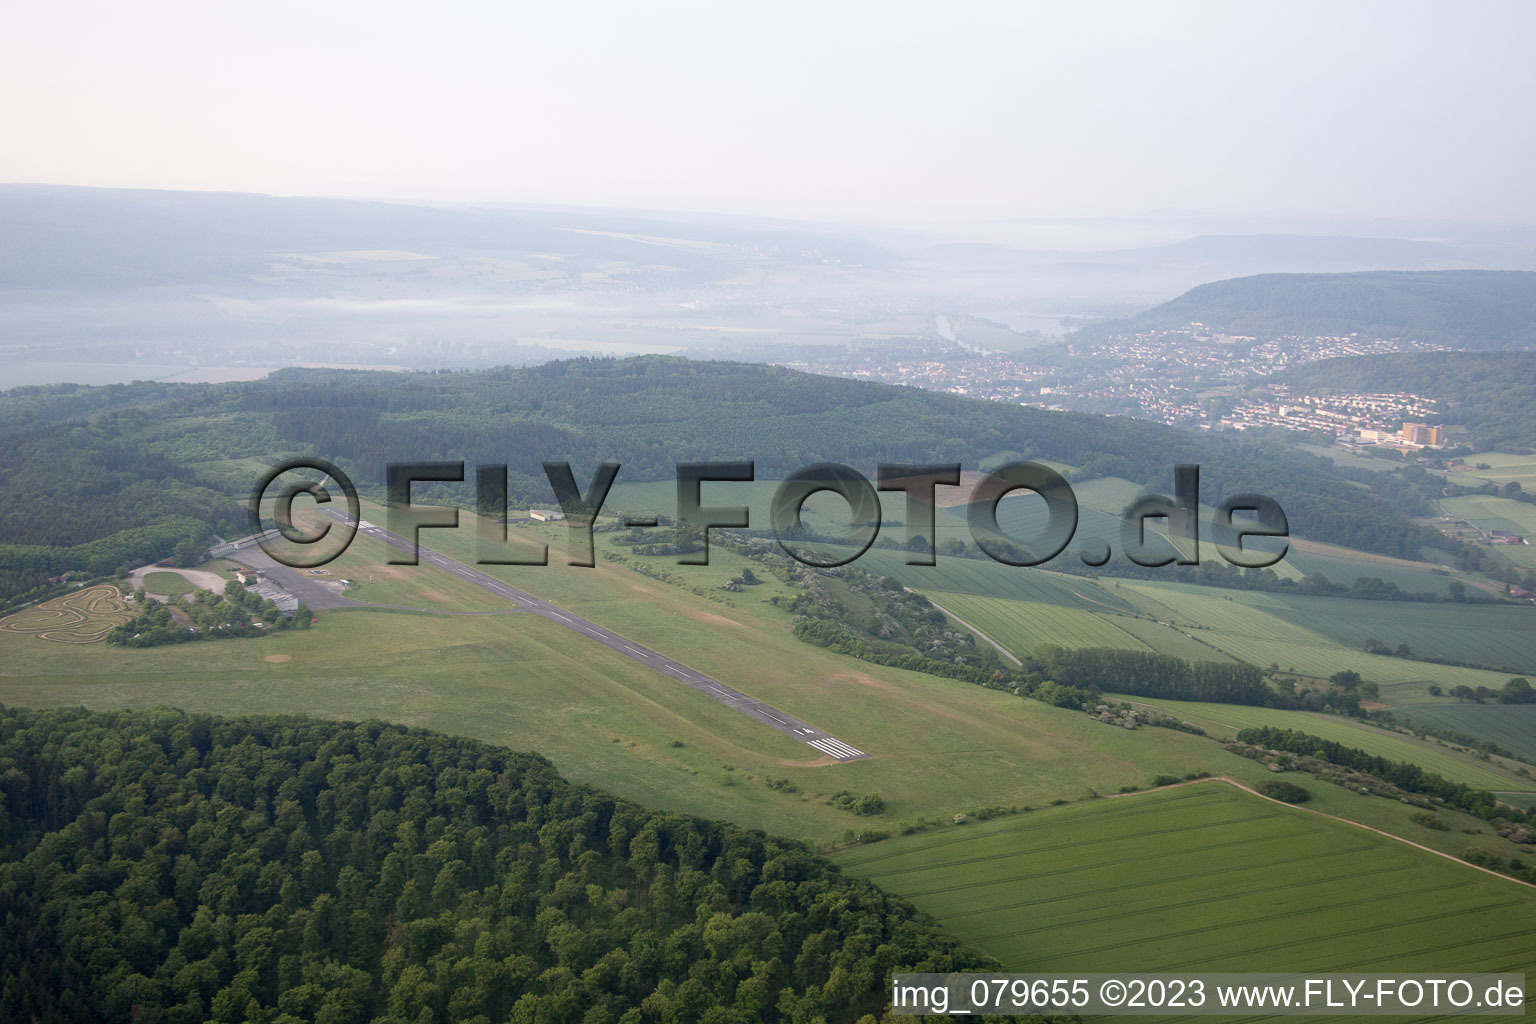 Airfield in Höxter in the state North Rhine-Westphalia, Germany